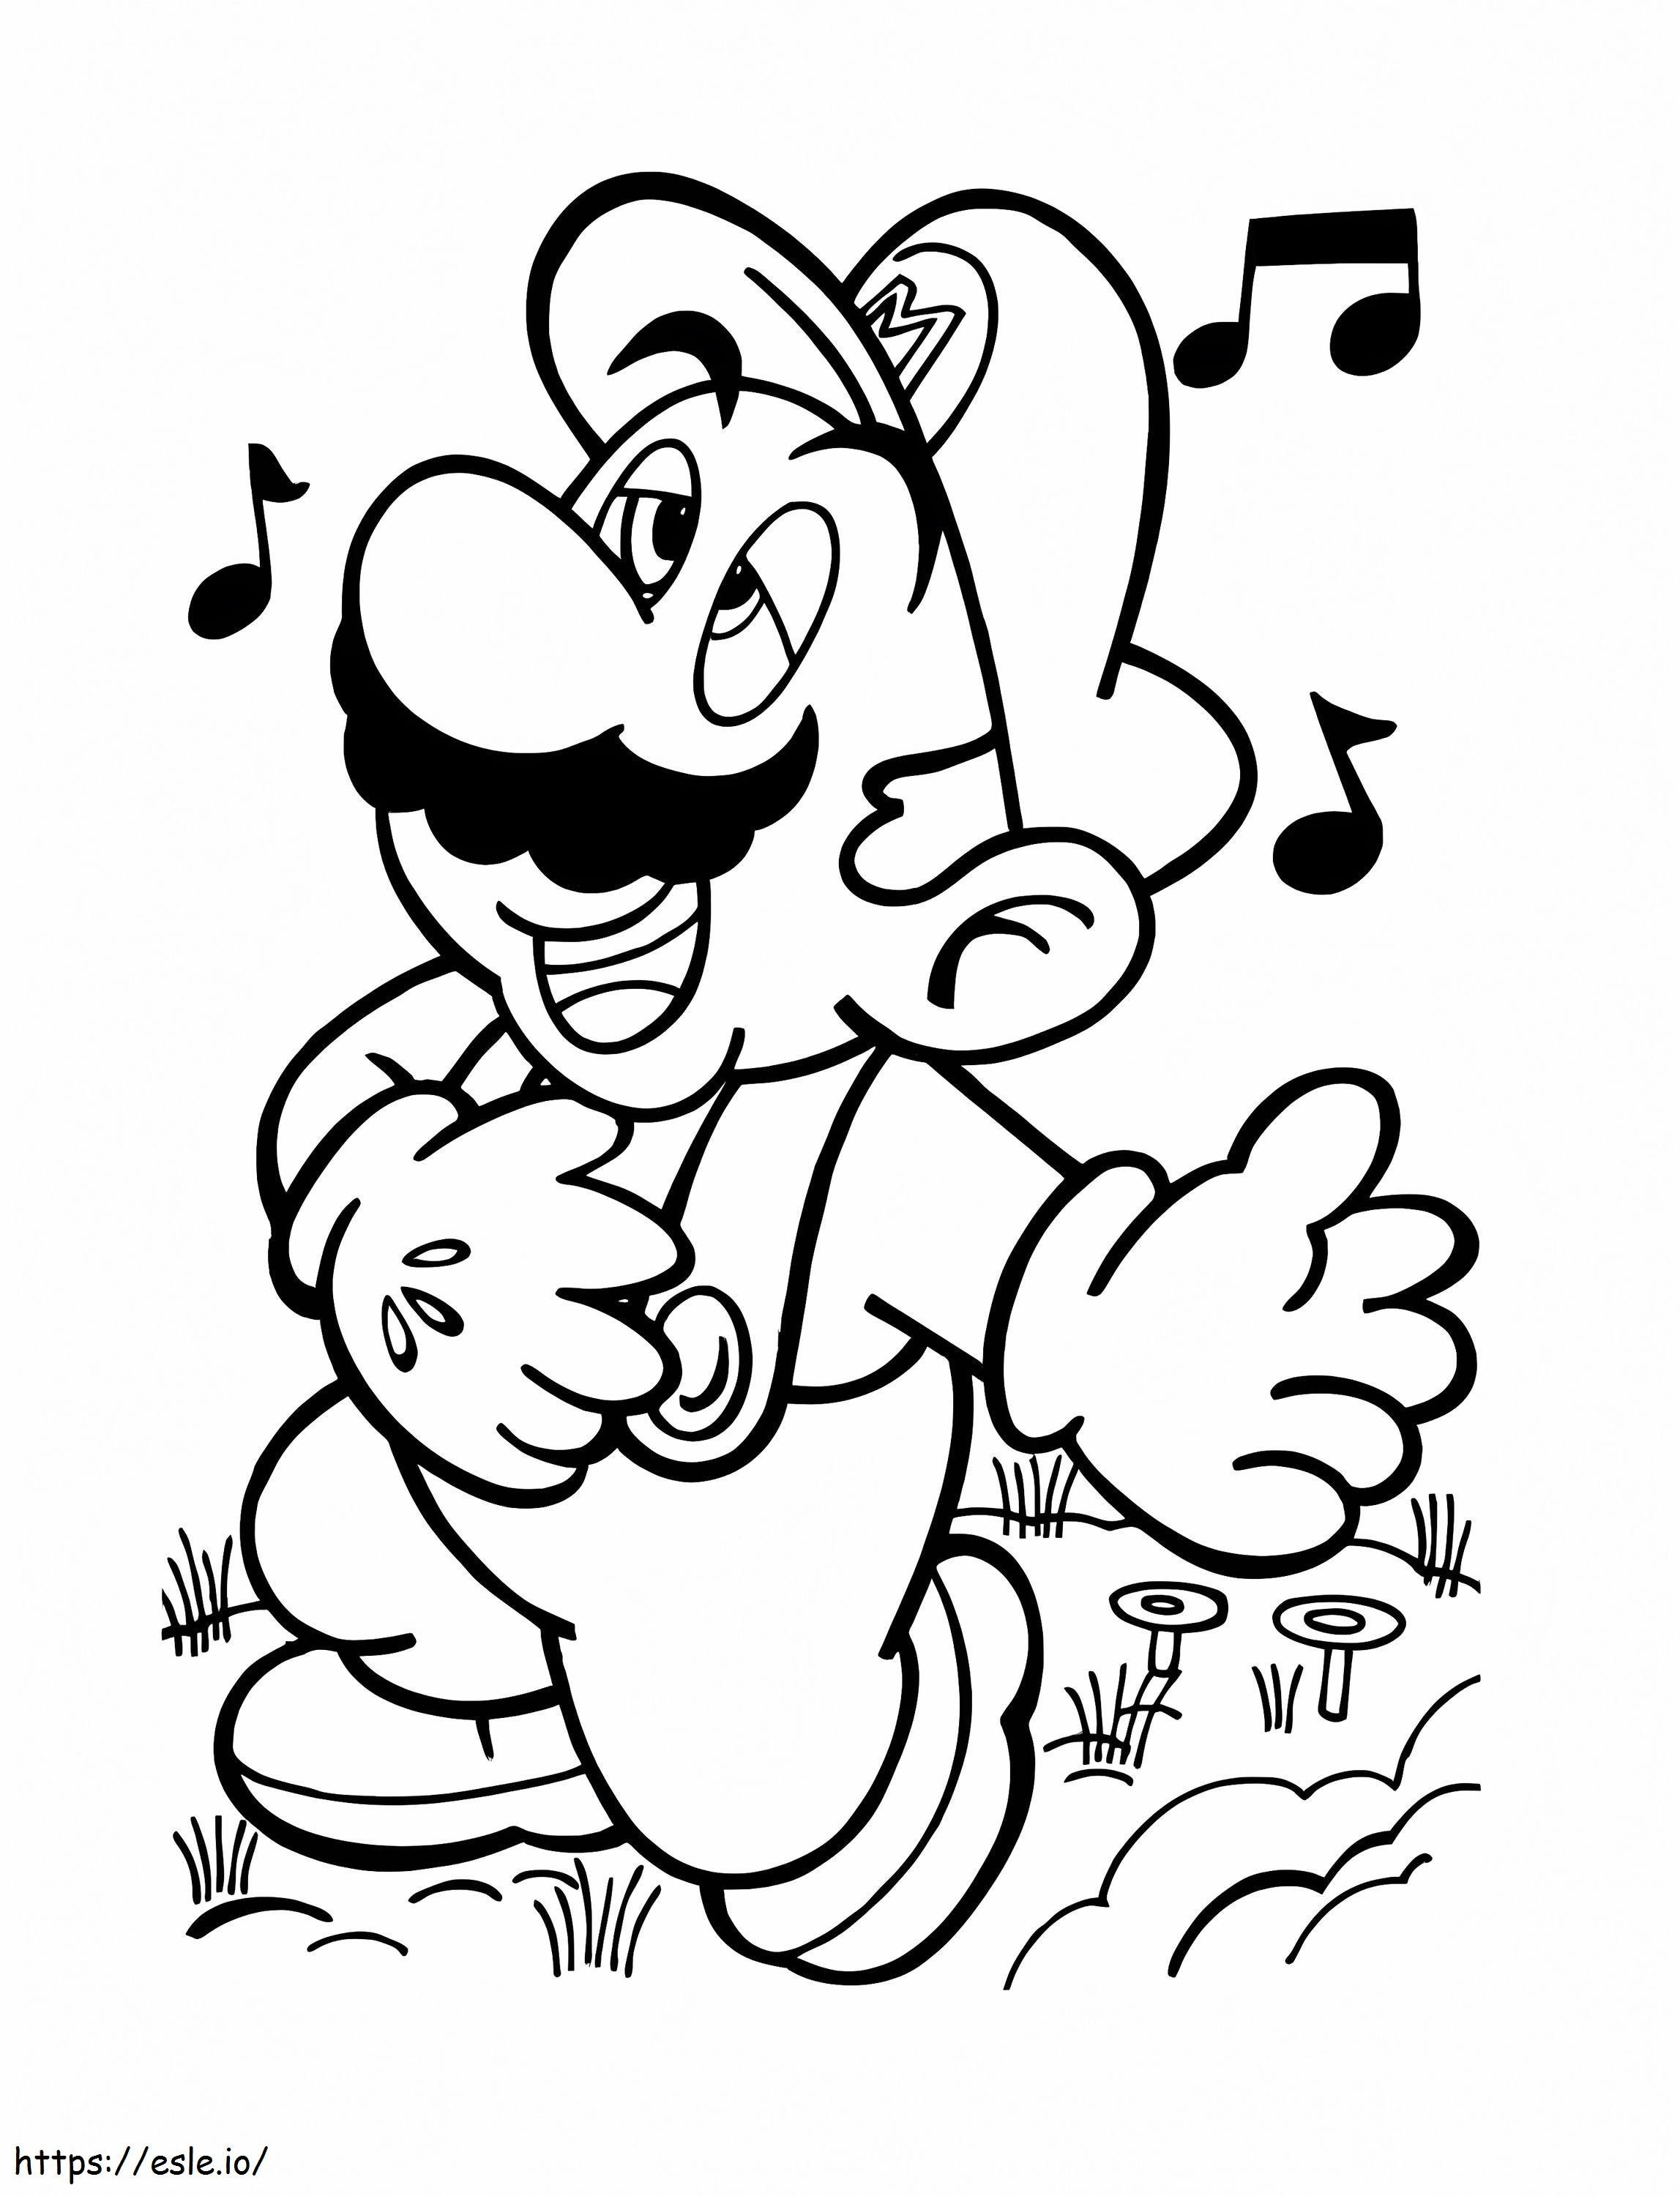 Mario-lied kleurplaat kleurplaat